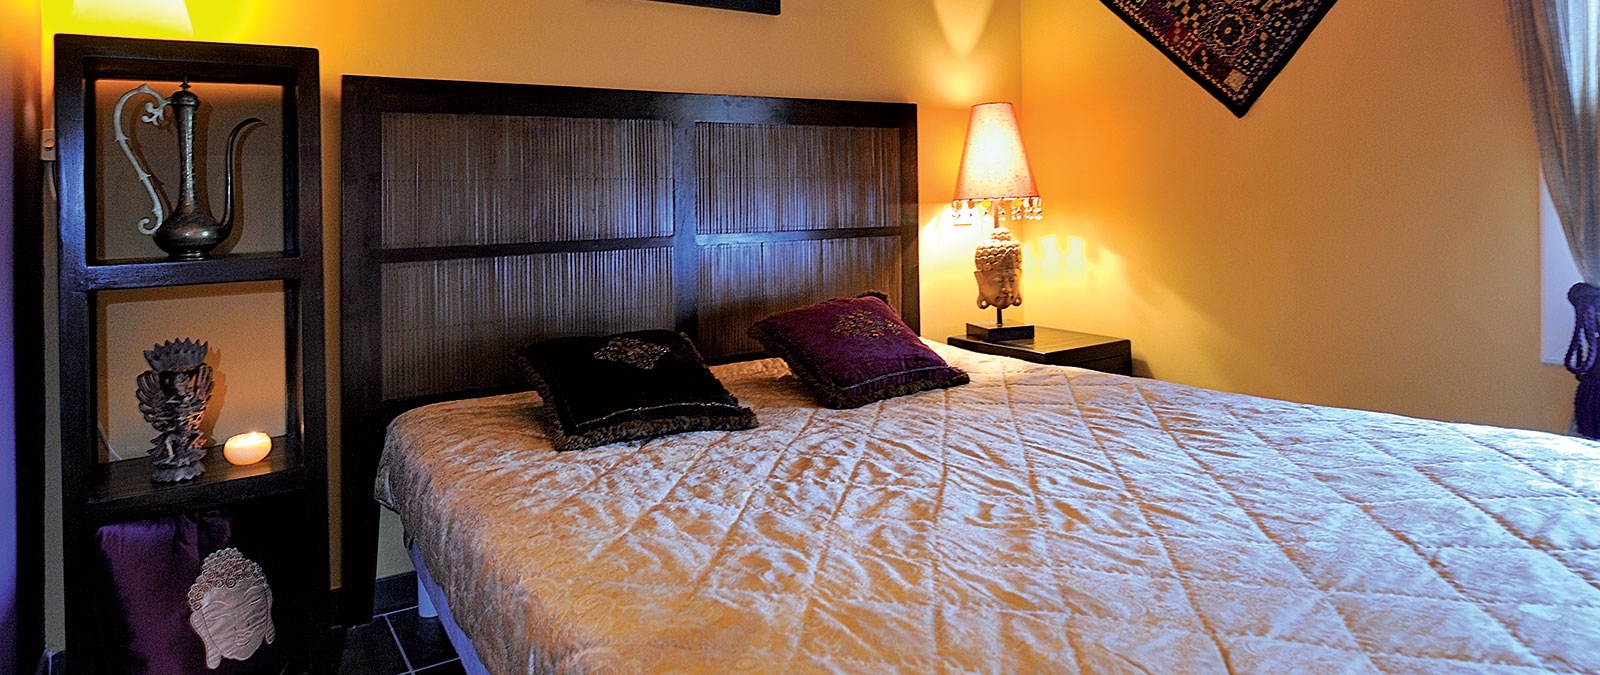 Habitación con cama doble Alquiler estudio naturista Jaïpur